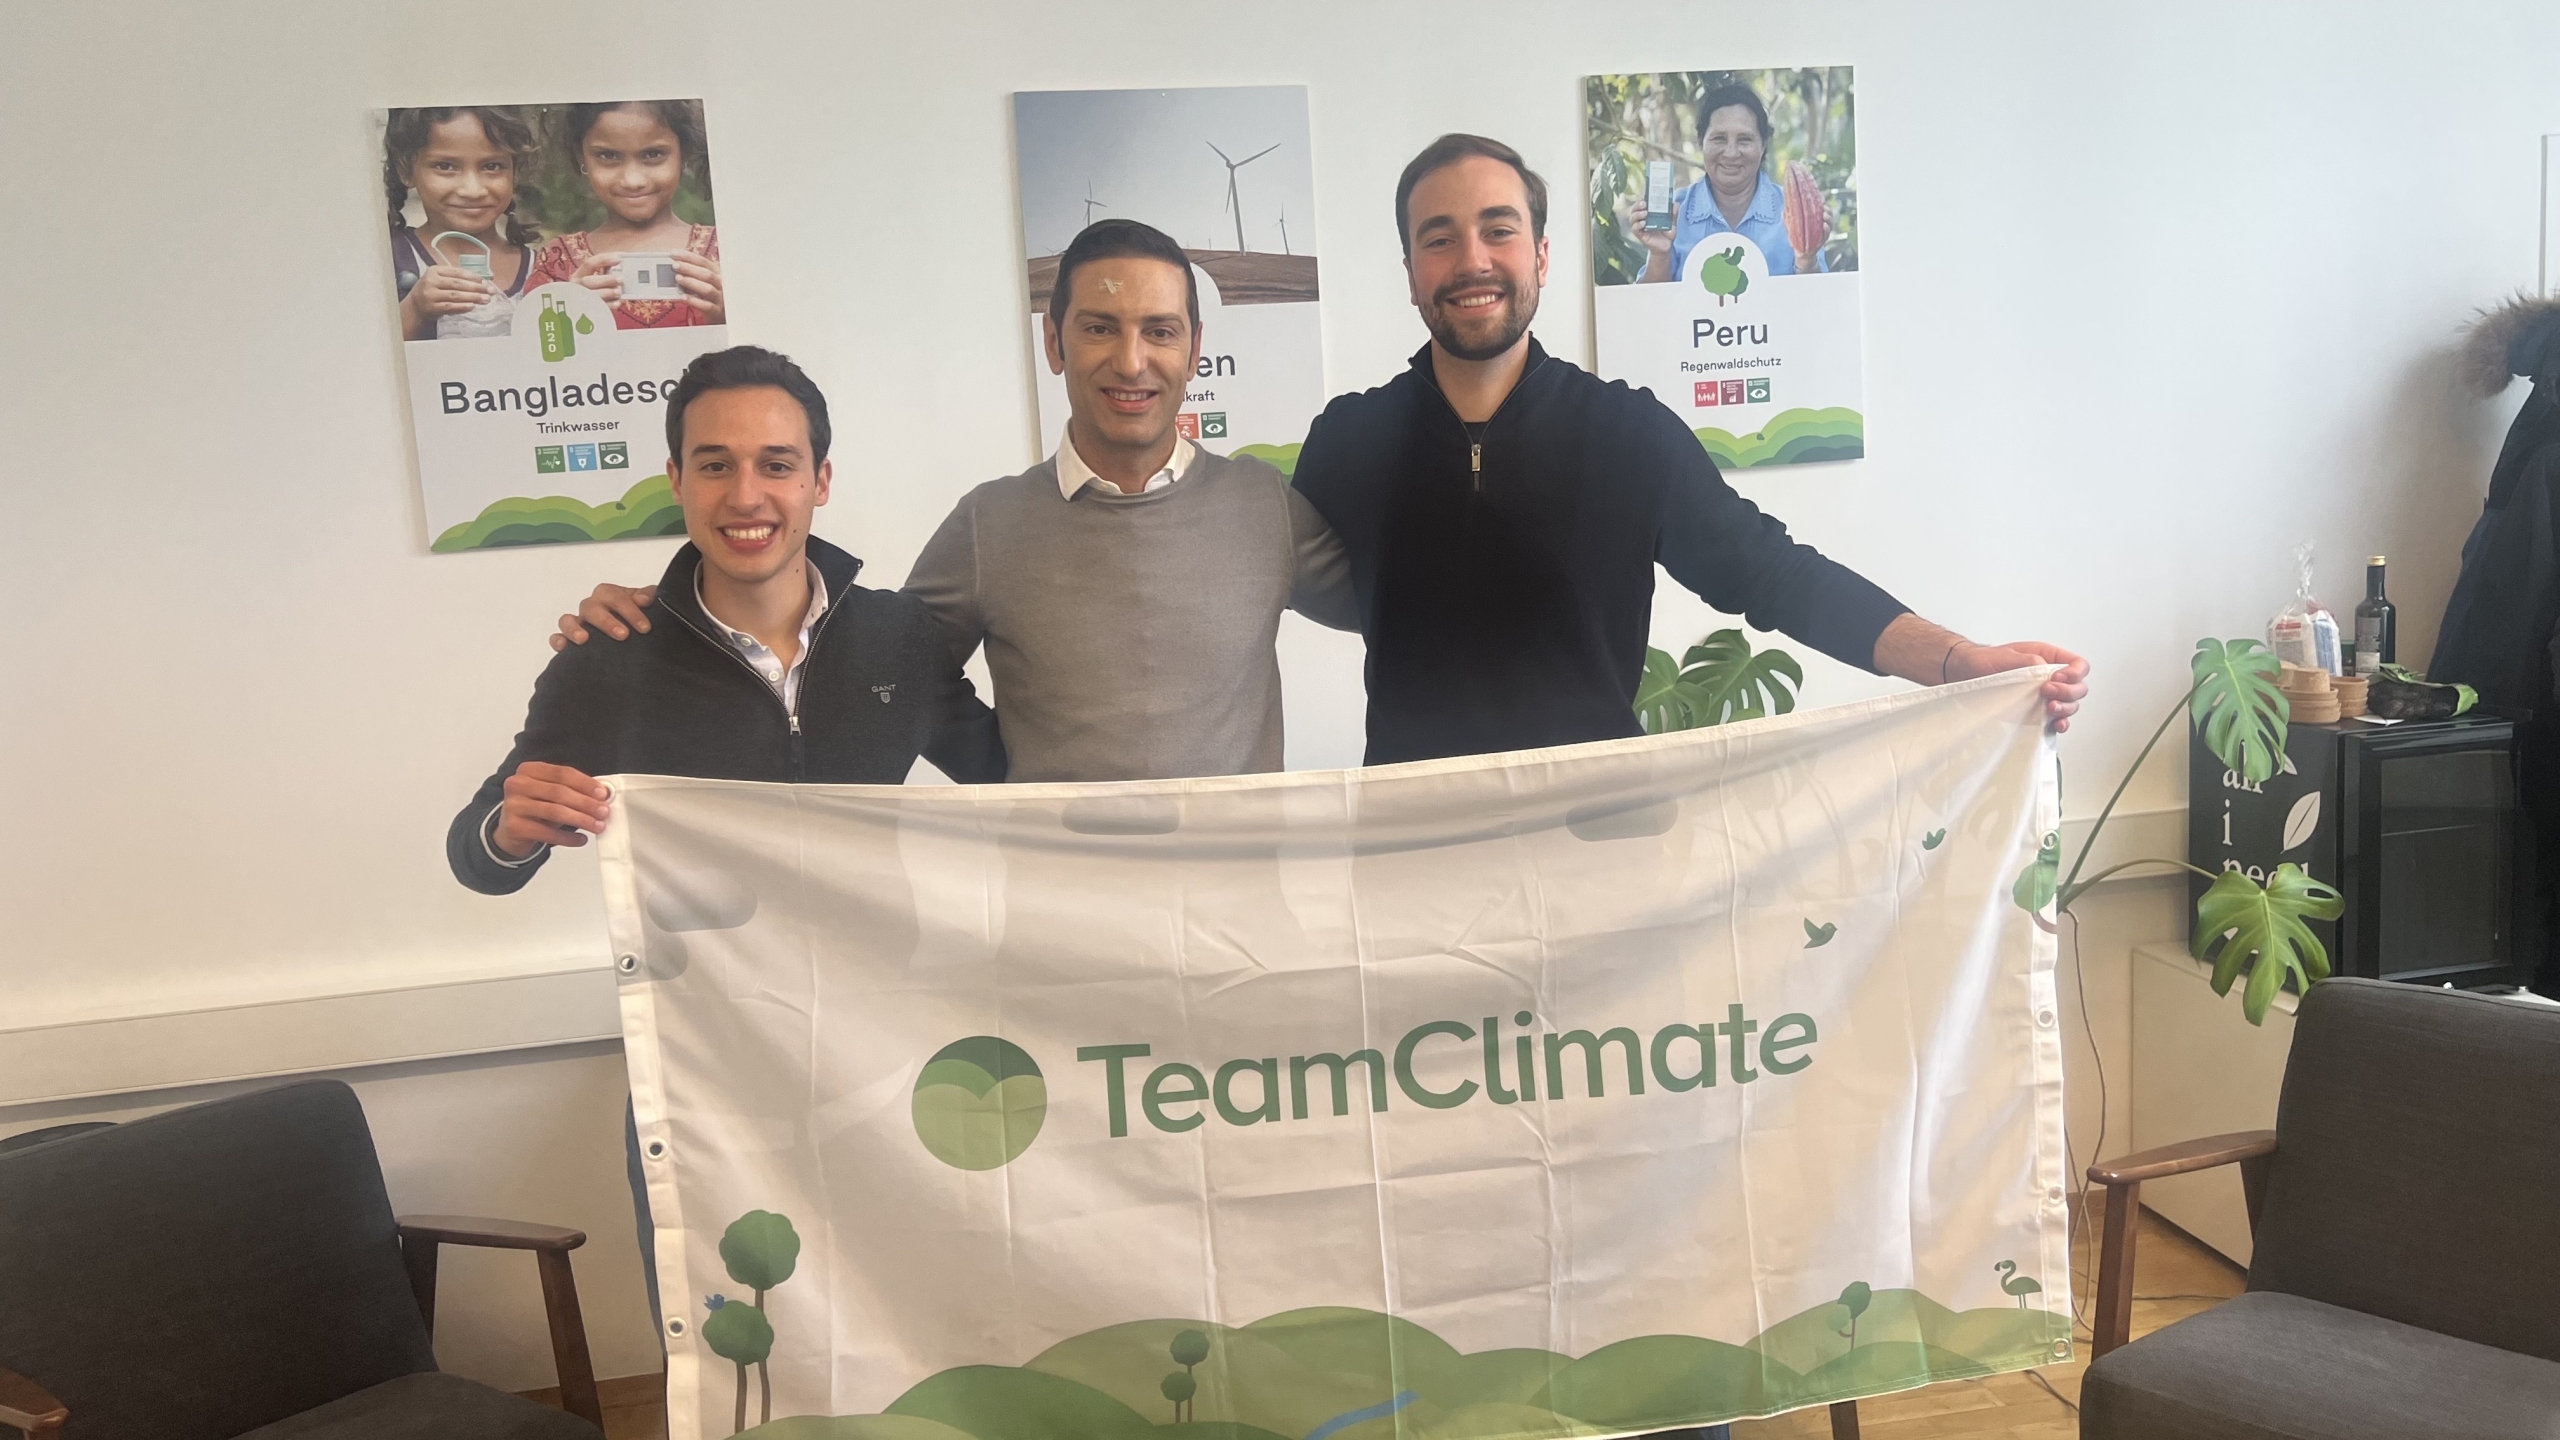 ClimateTrade เข้าซื้อกิจการ TeamClimate เพื่อเสนอการชดเชยคาร์บอนตามการสมัครสมาชิก